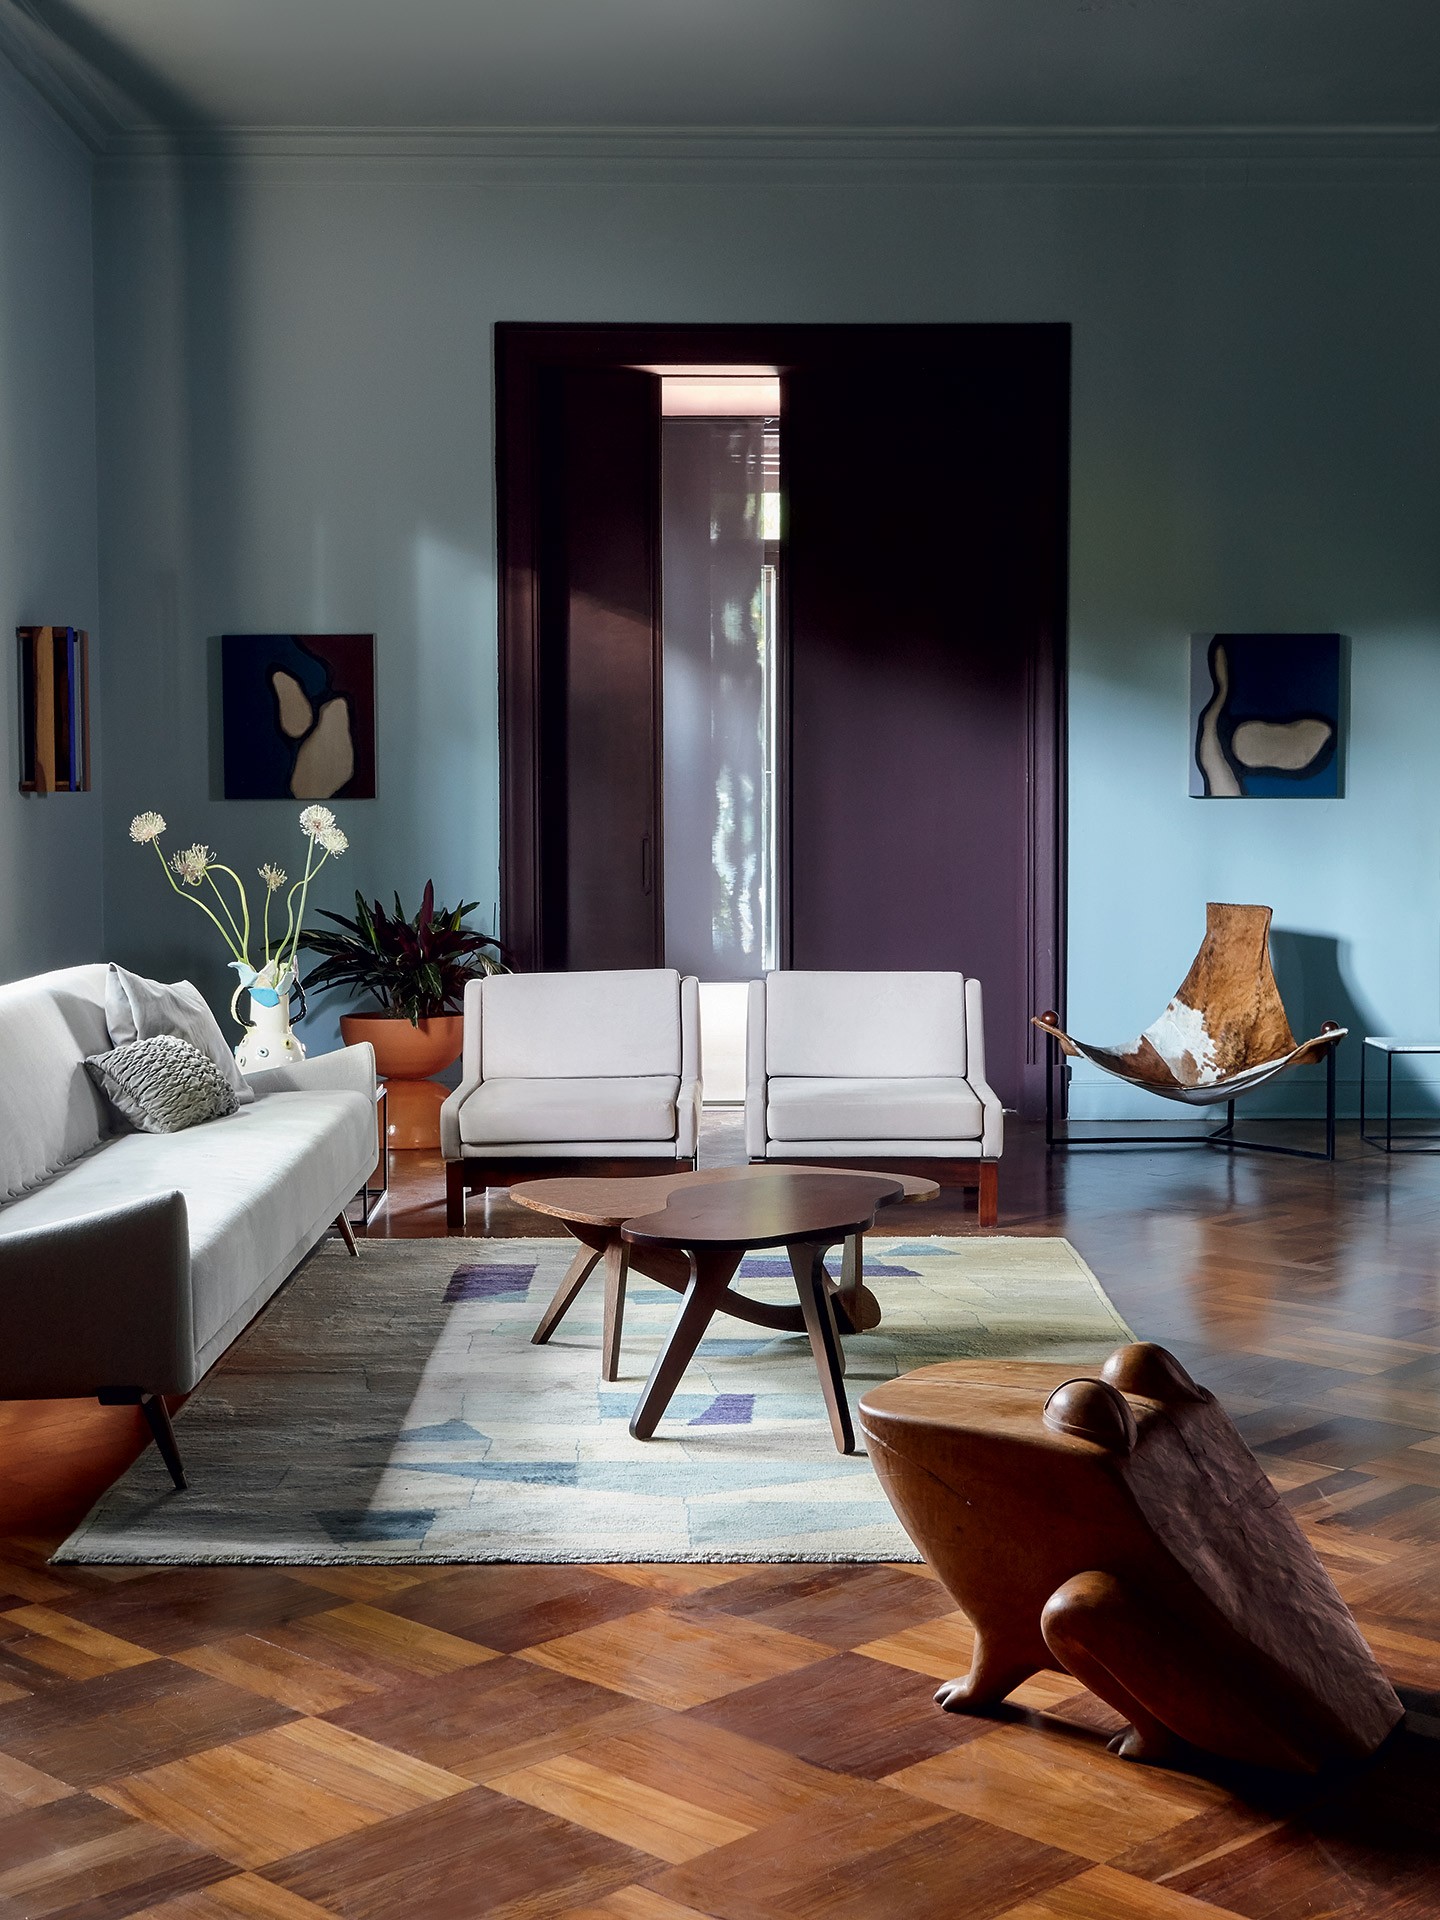 Curso Home Design por Casa Vogue ganha nova edição on-line no IED (Foto: Ilana Besser)